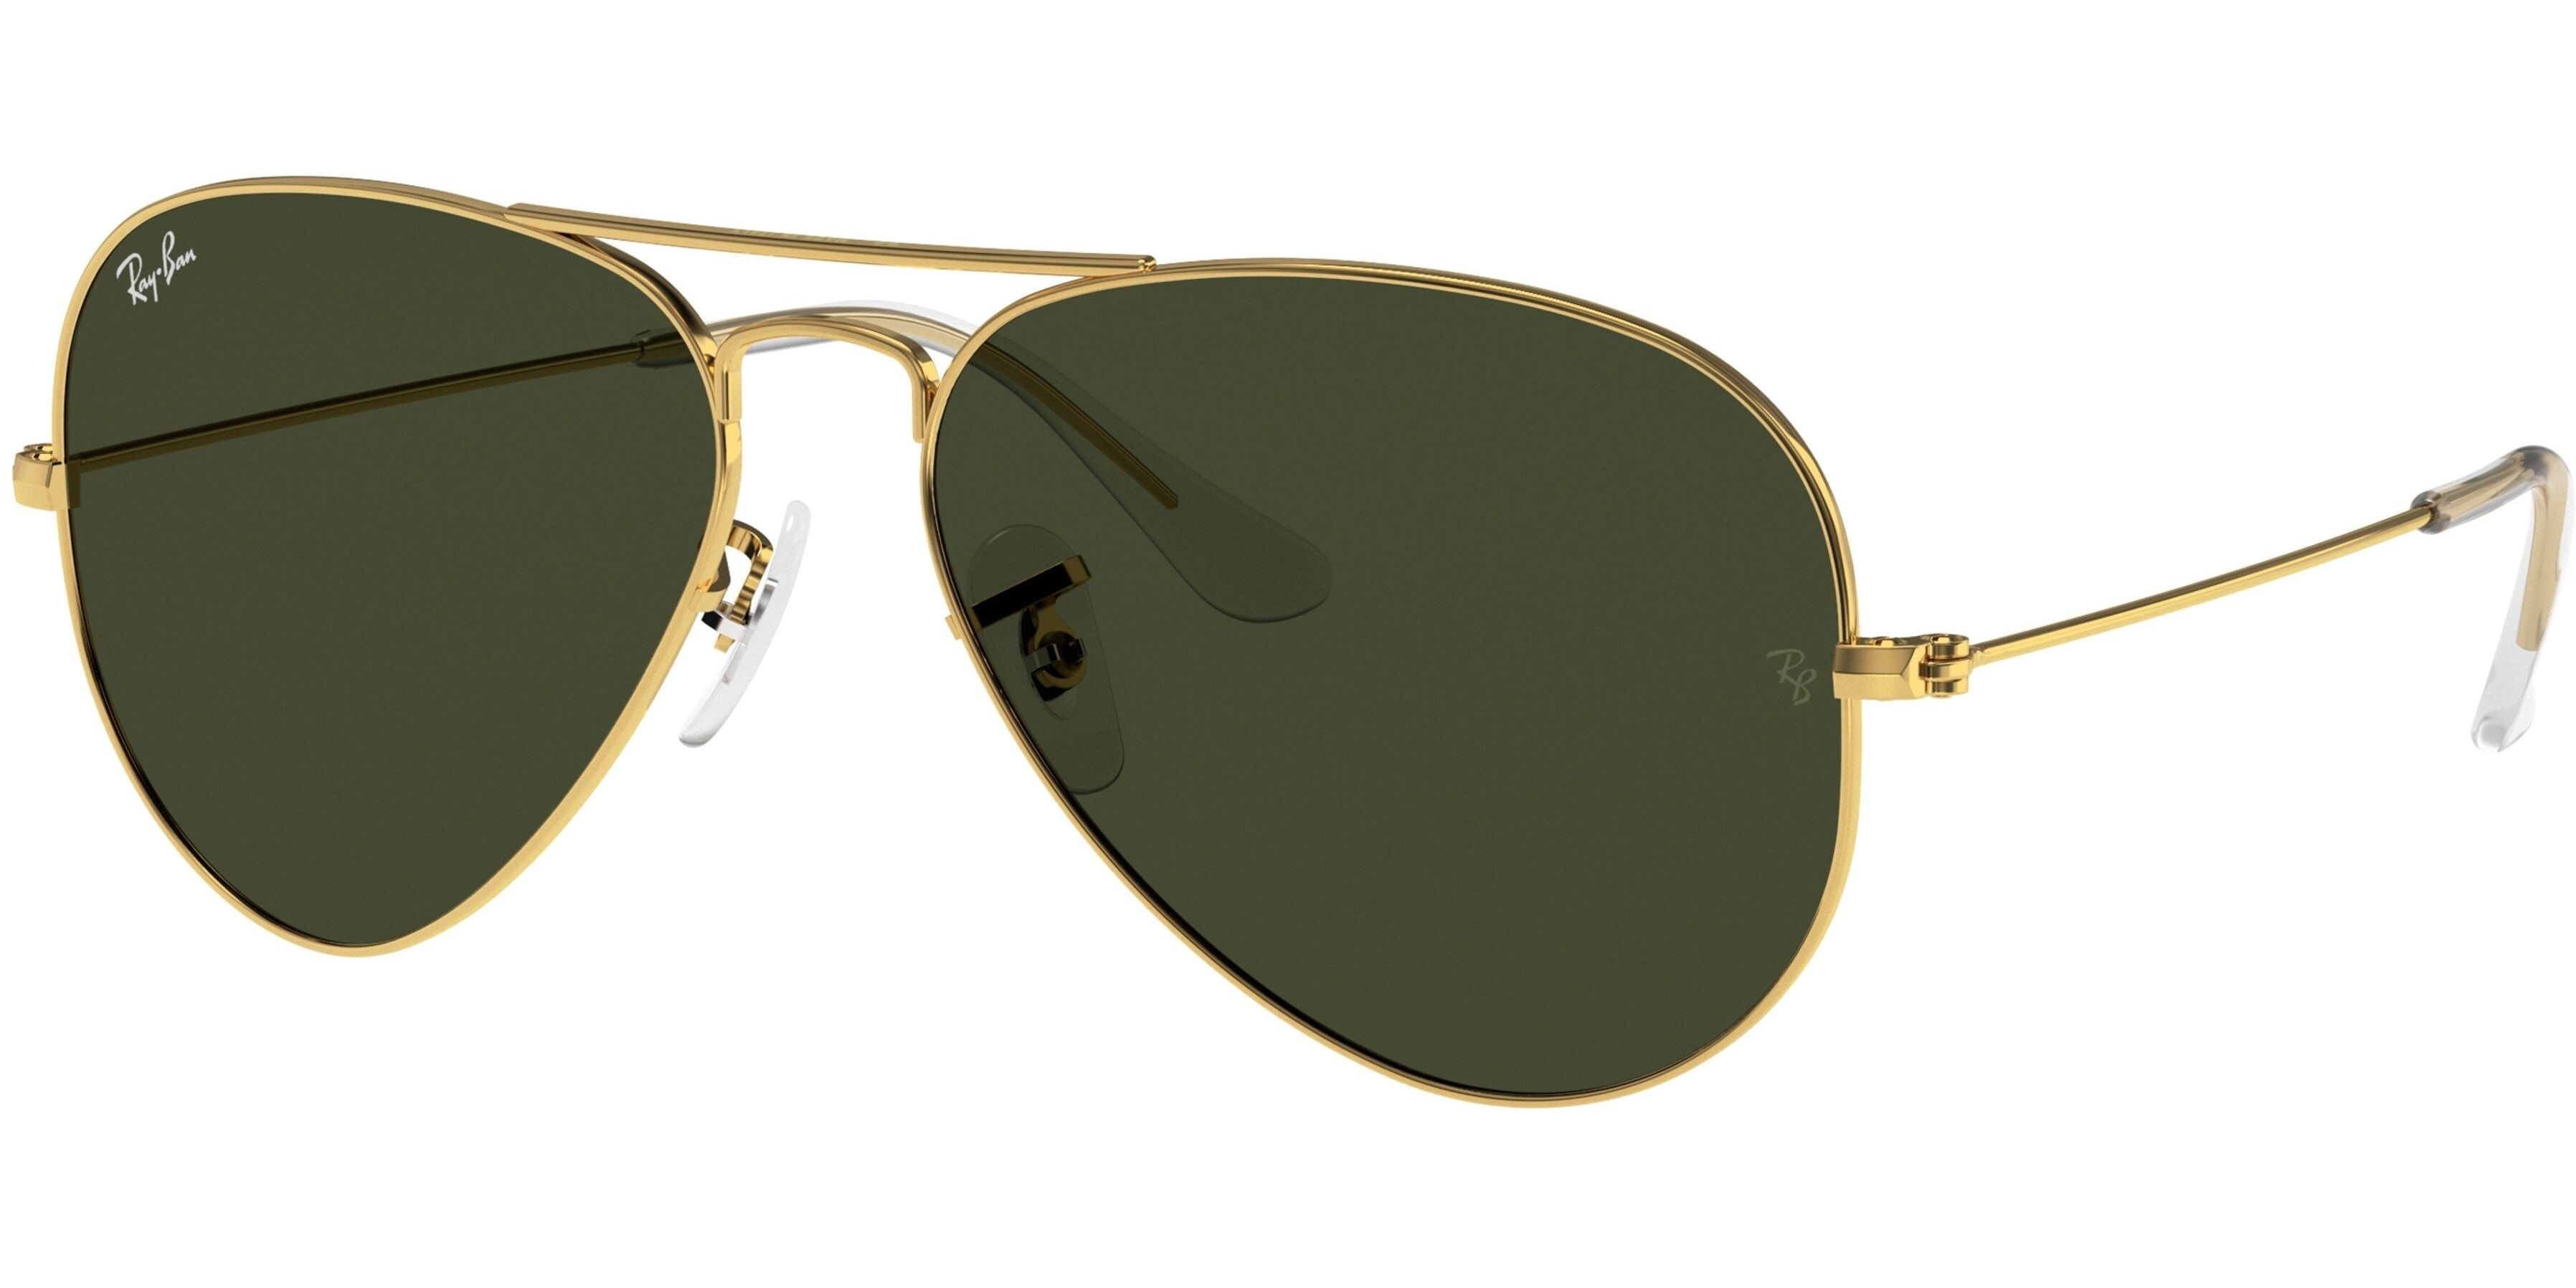 Sluneční brýle Ray-Ban® model 3025, barva obruby zlatá lesk, čočka šedozelená, kód barevné varianty L0205. 